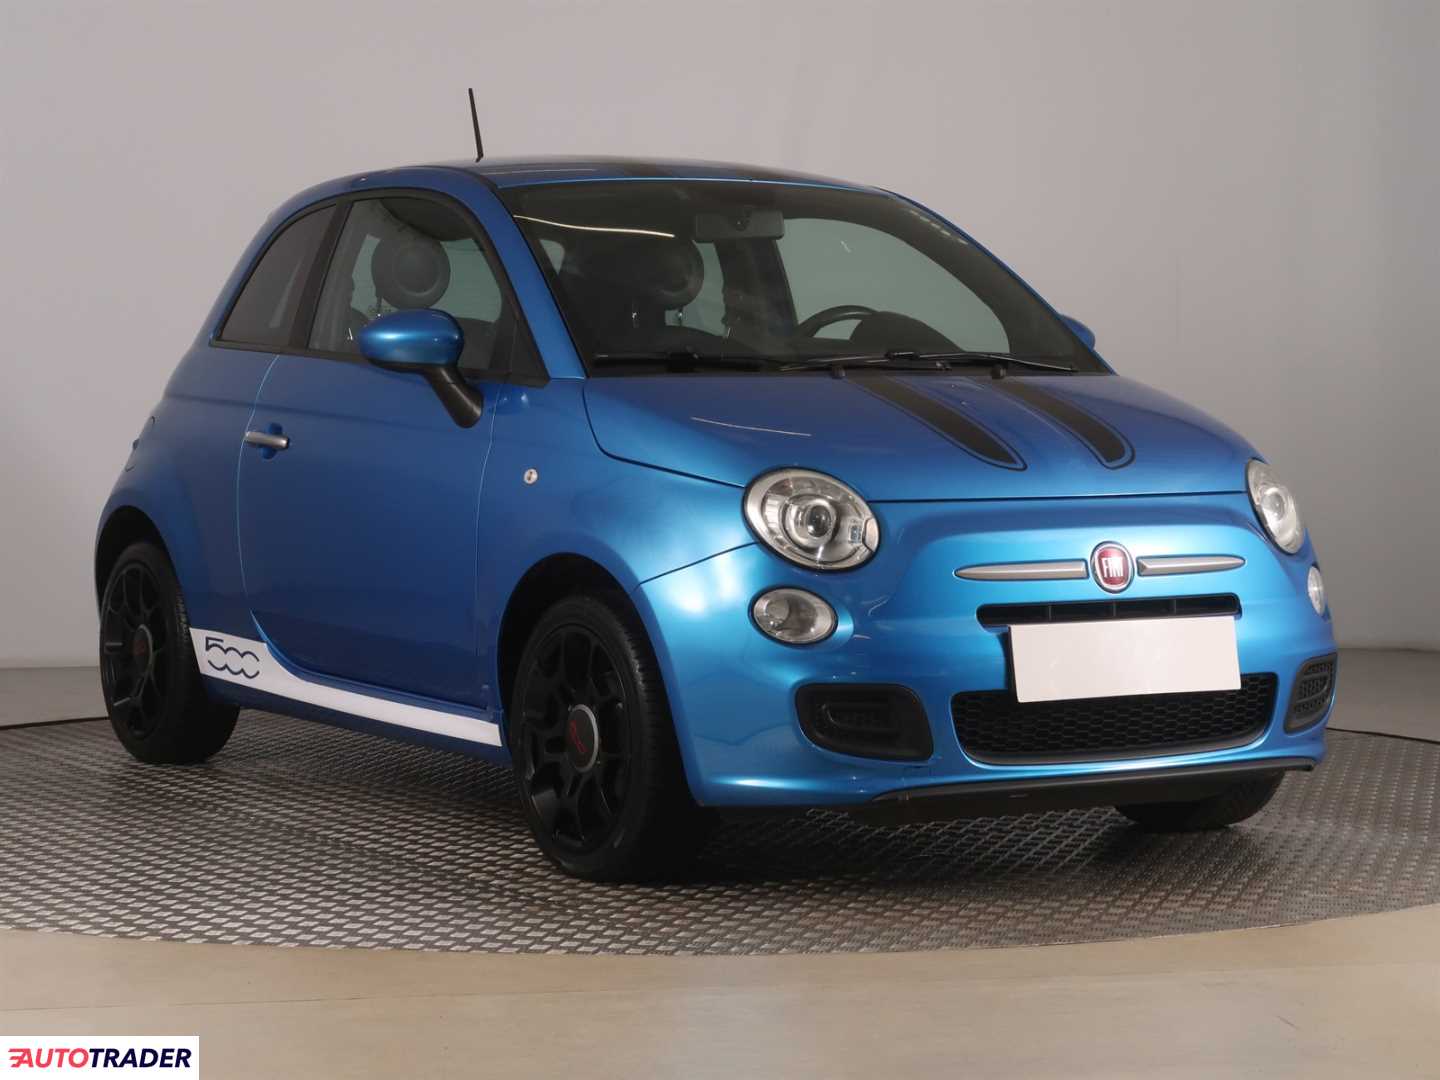 Fiat 500 2015 1.2 68 KM